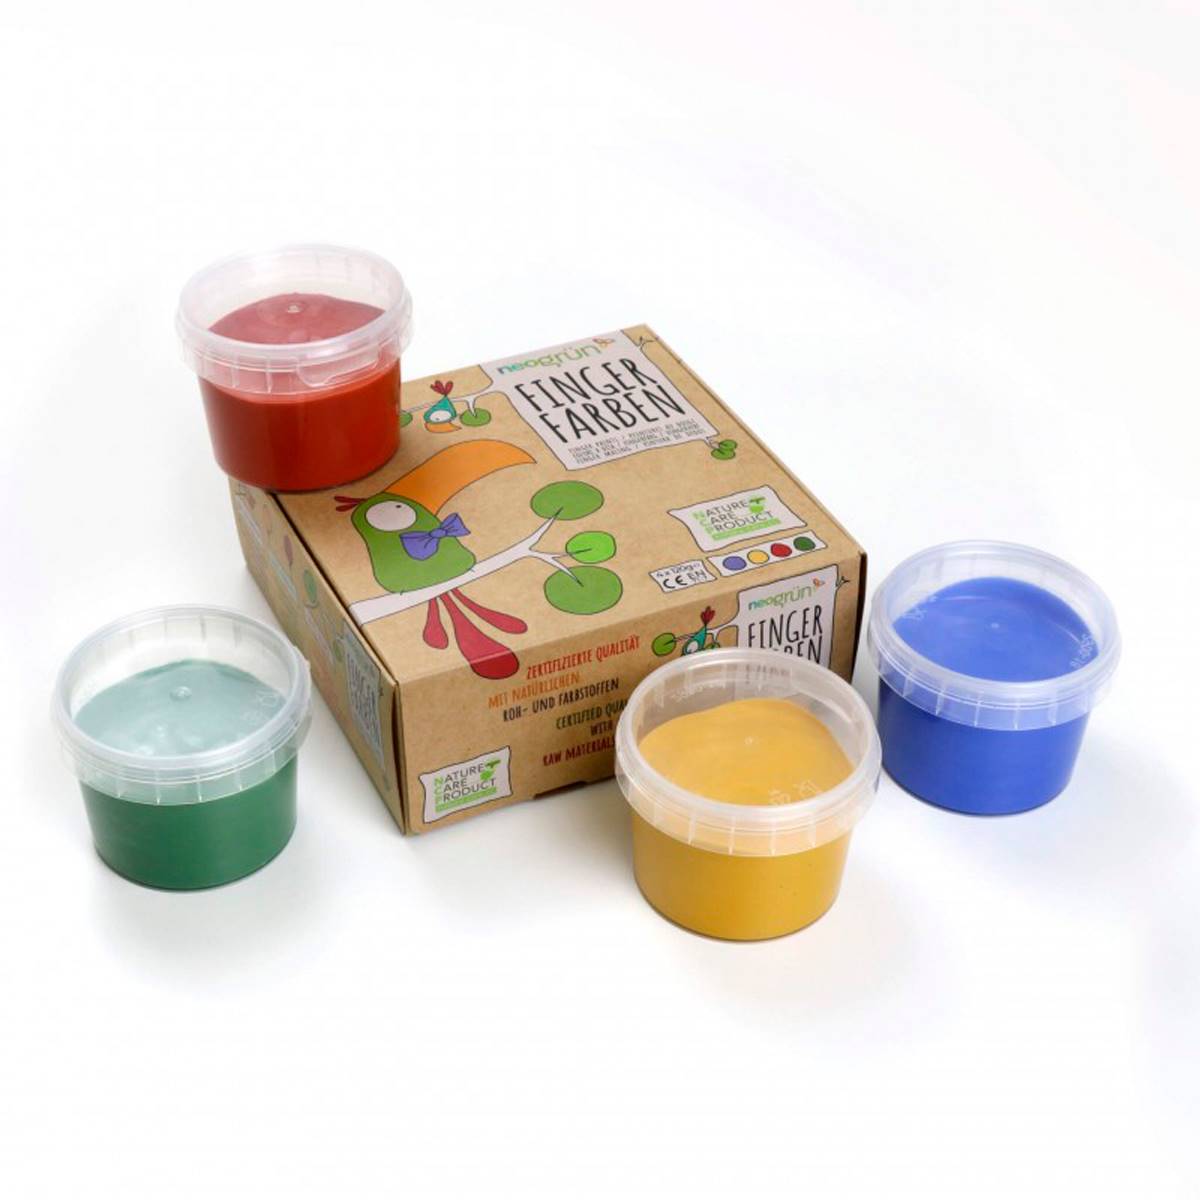 pintura-de-dedos-natural-bio-vegana-neogrun-amarillo-verde-rojo-y-azul. Una pintura de dedos vegetal y sin tóxicos